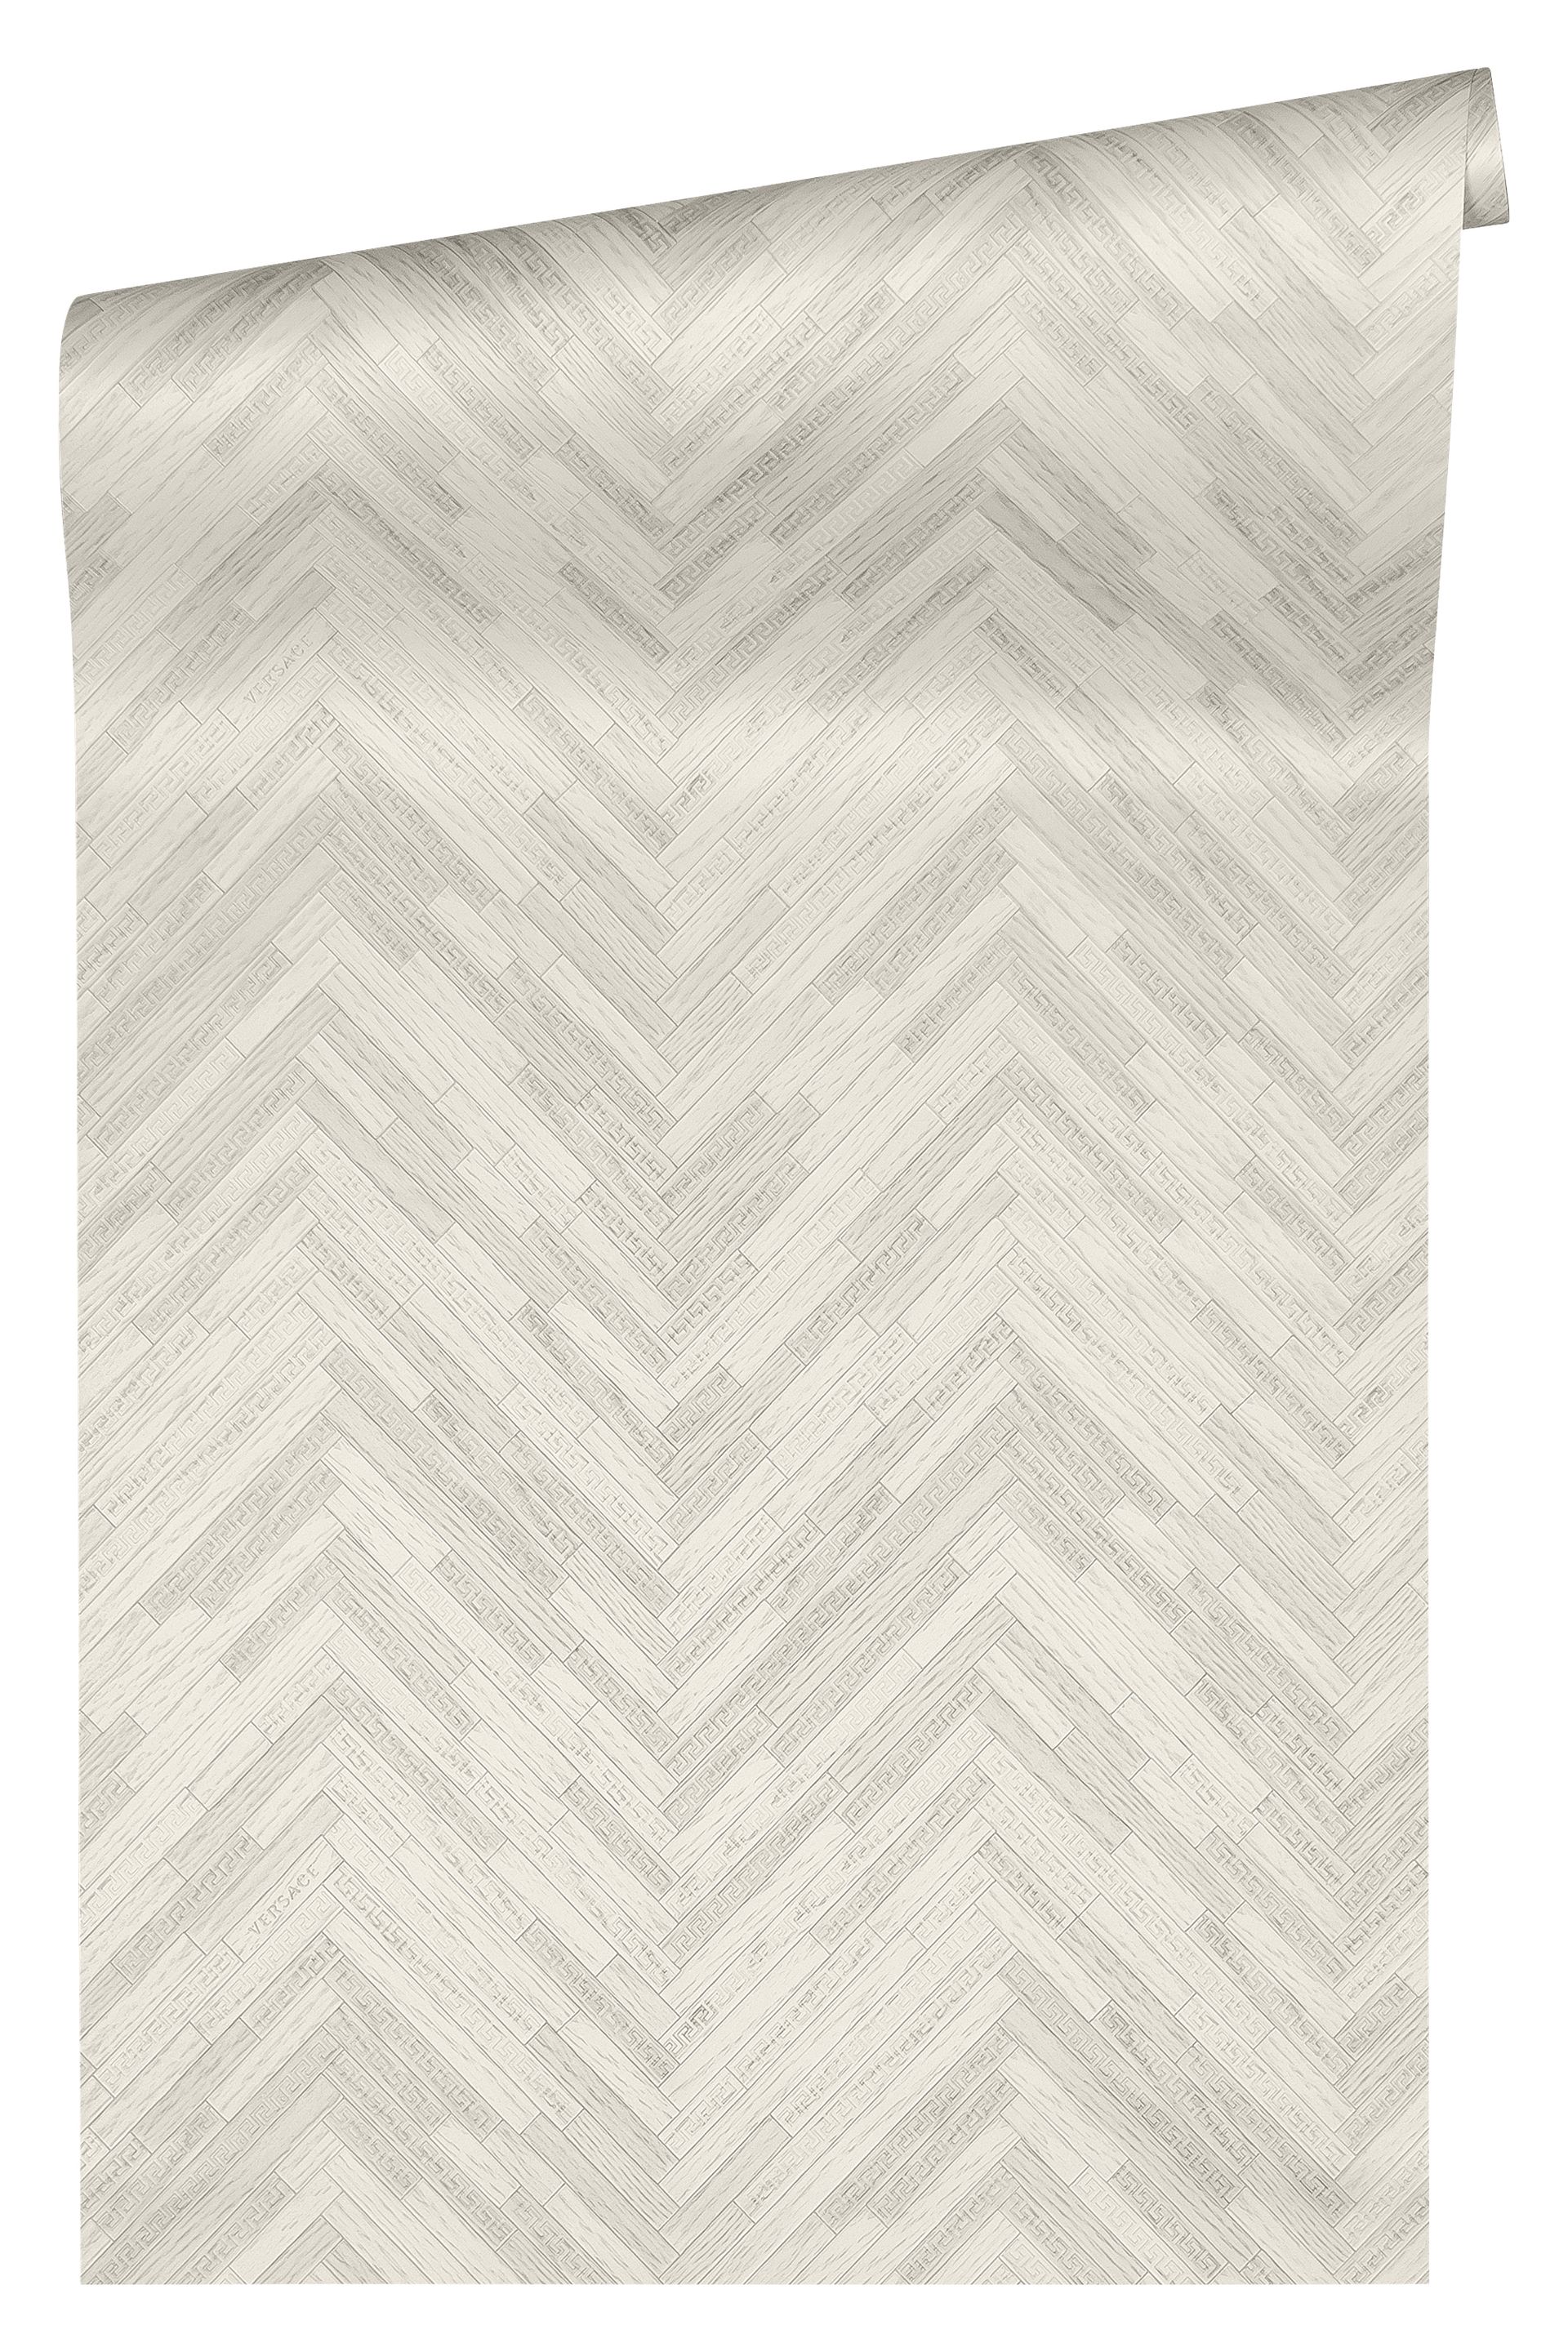 Versace wallpaper Versace 4, Tapete in Holzoptik, grau, weiß 370511